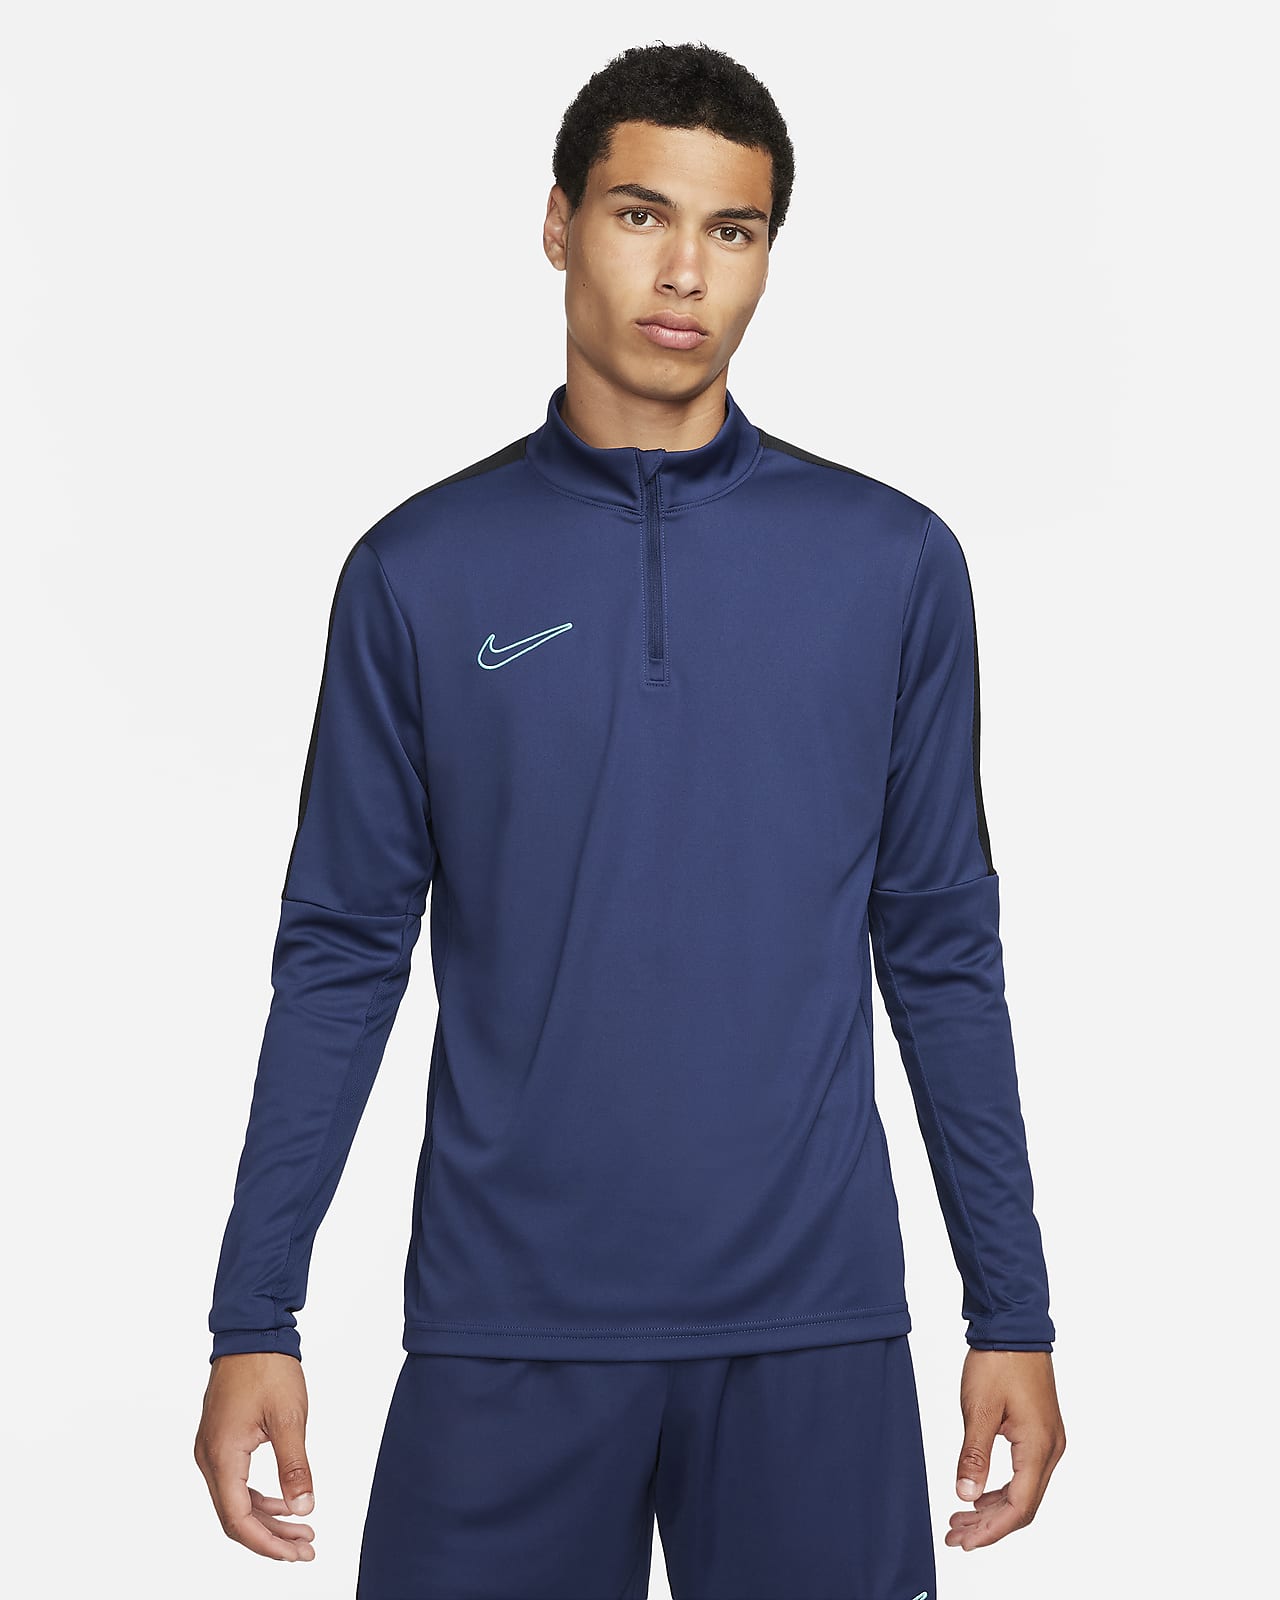 Nike Academy - Negro - Calcetas Fútbol Hombre 